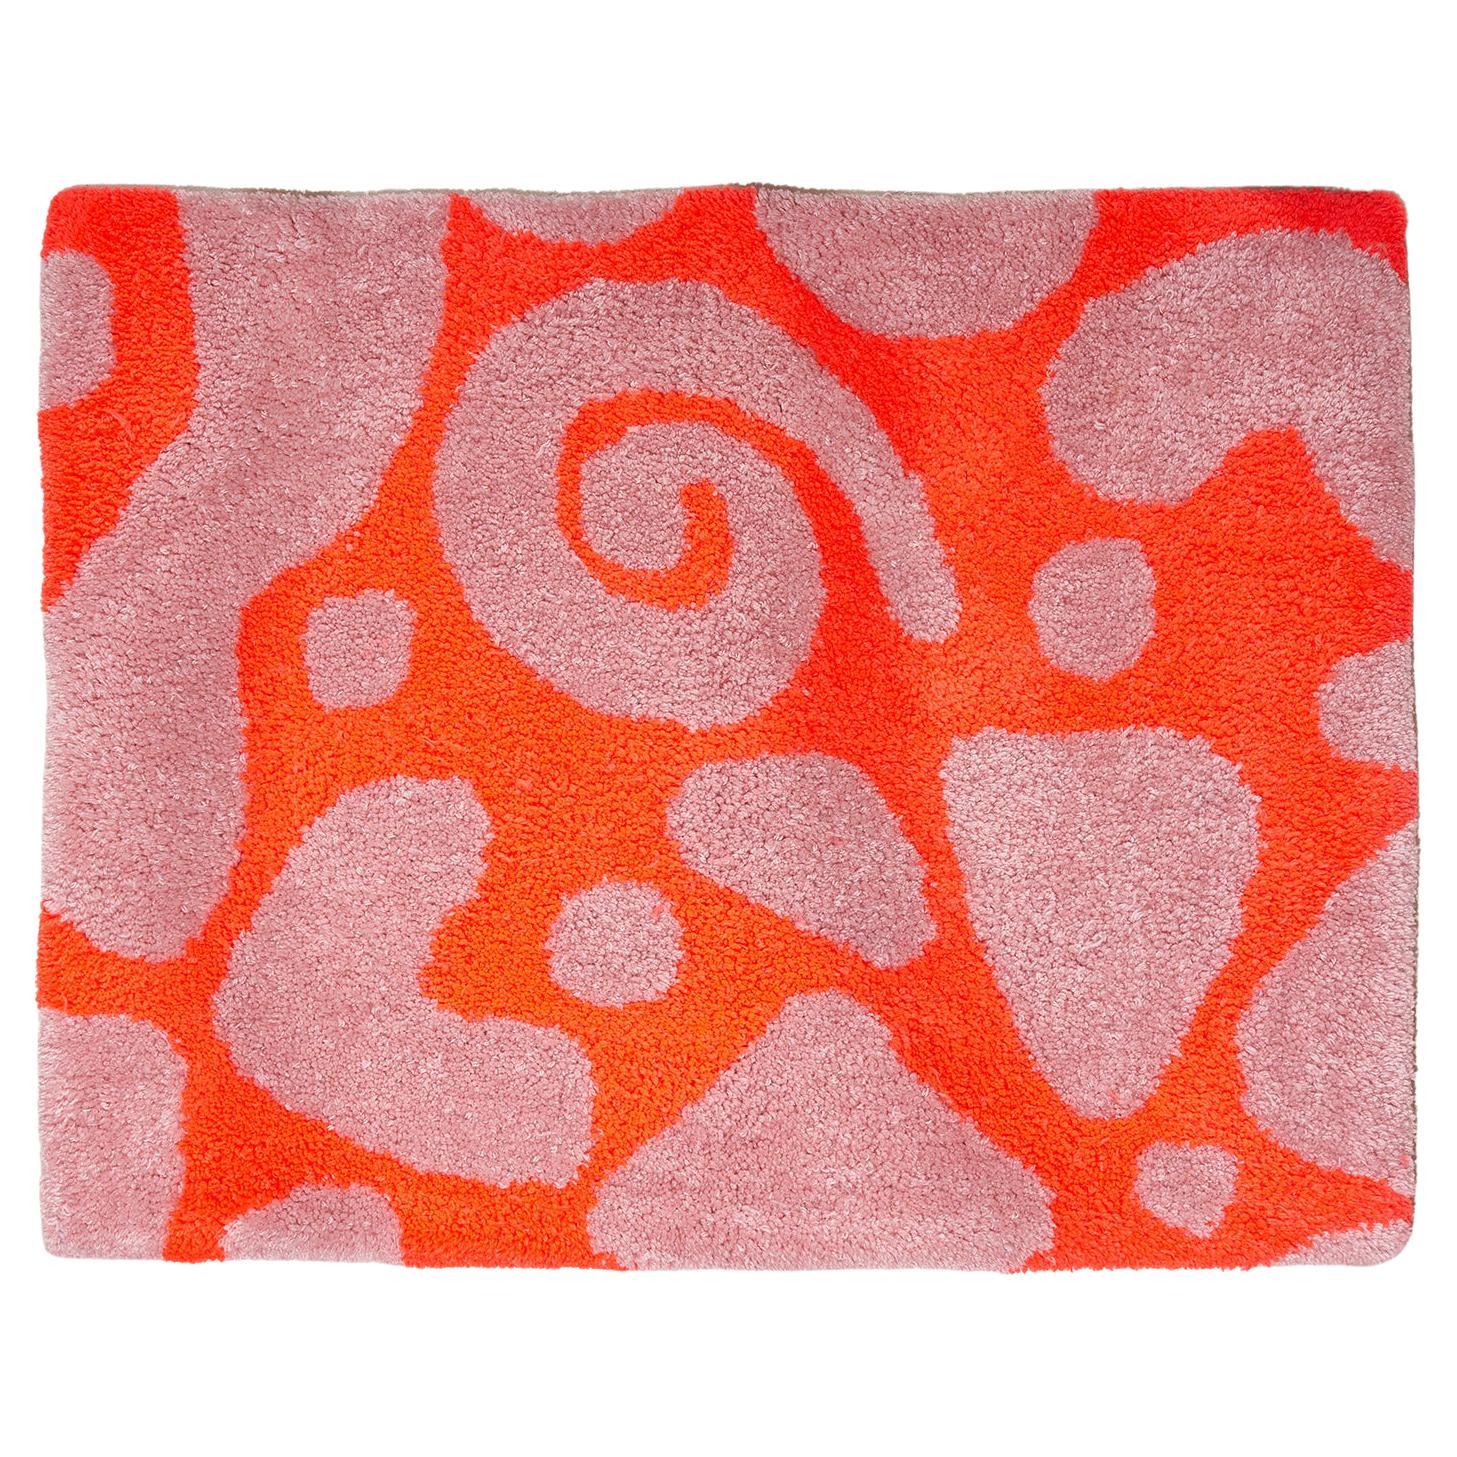 Handgetufteter Teppich mit Hot Red und Blush Pink-Akzenten